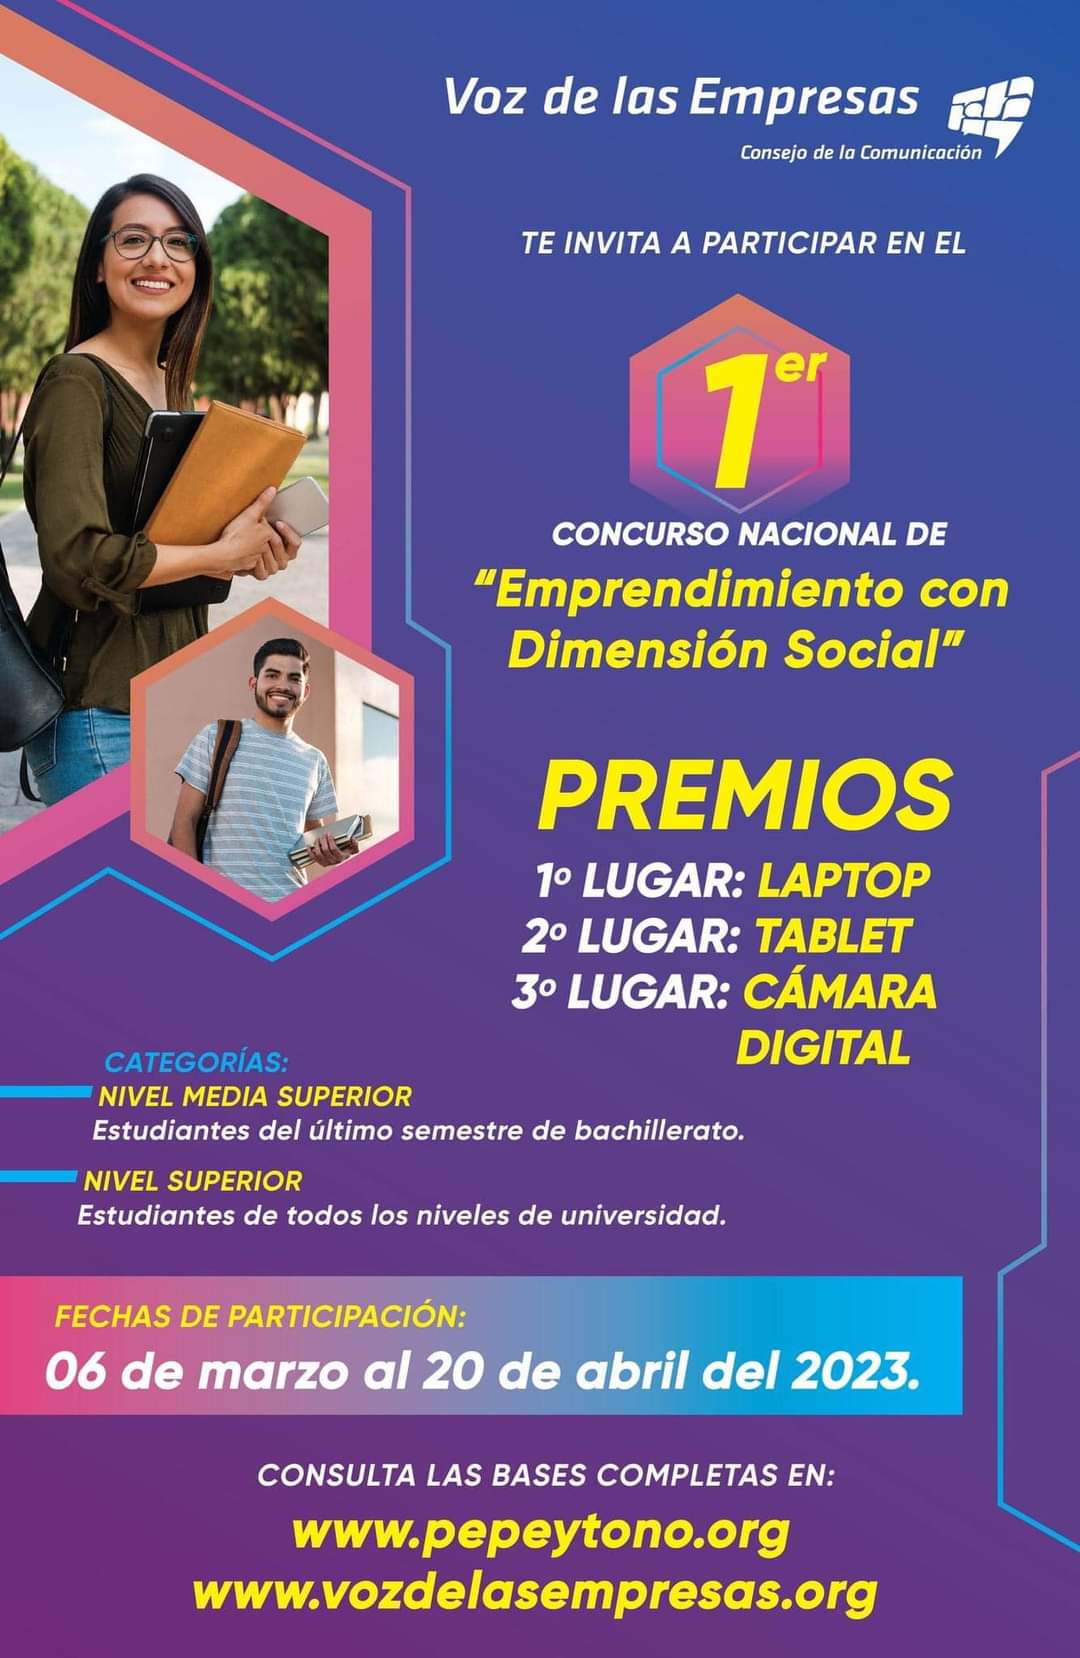 1er. Concurso Nacional de Emprendimiento con Dimensión Social.